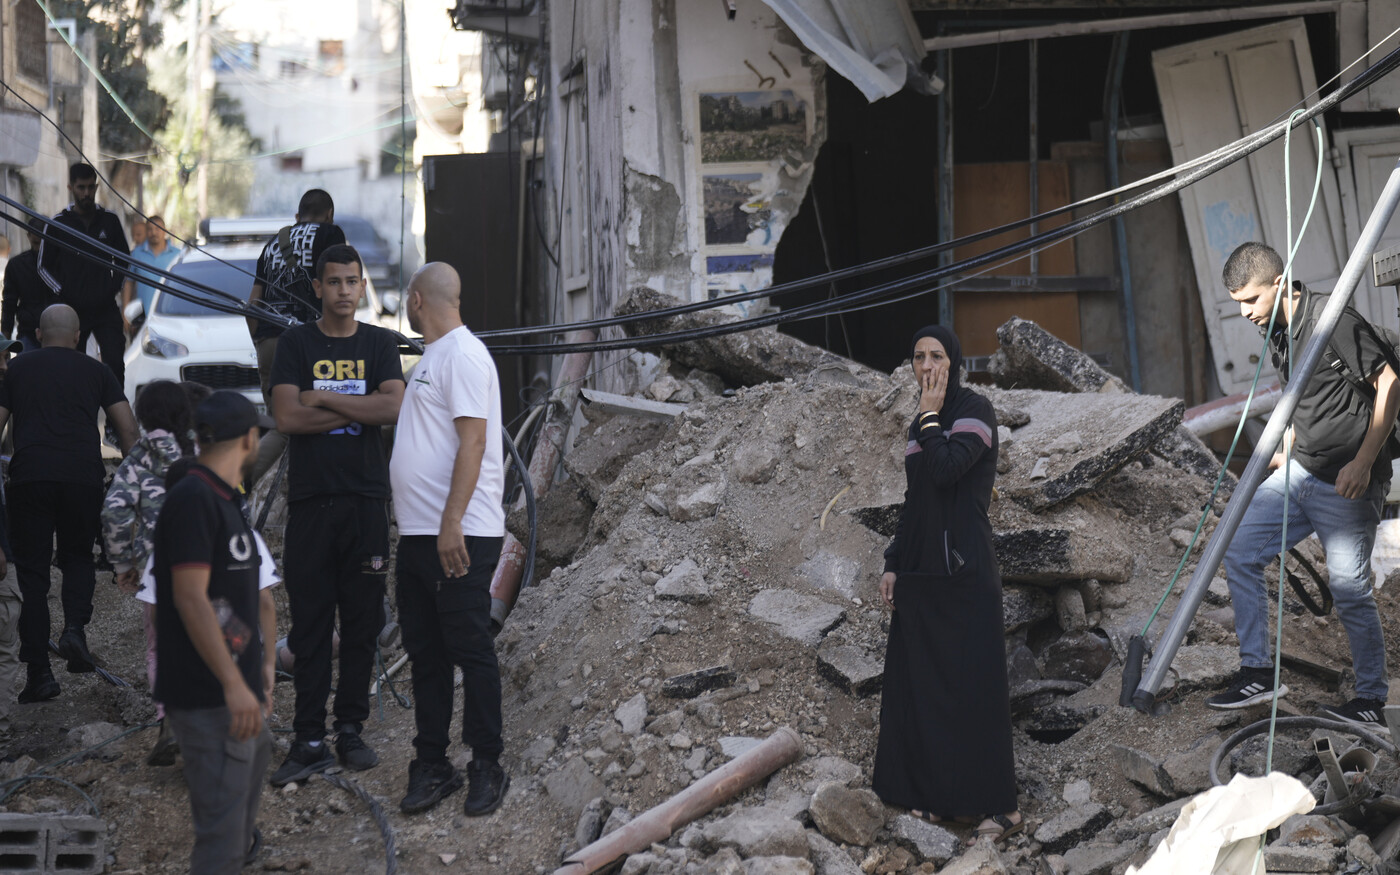 A WHO közegészségügyi katasztrófára figyelmeztet a Gázai övezetben